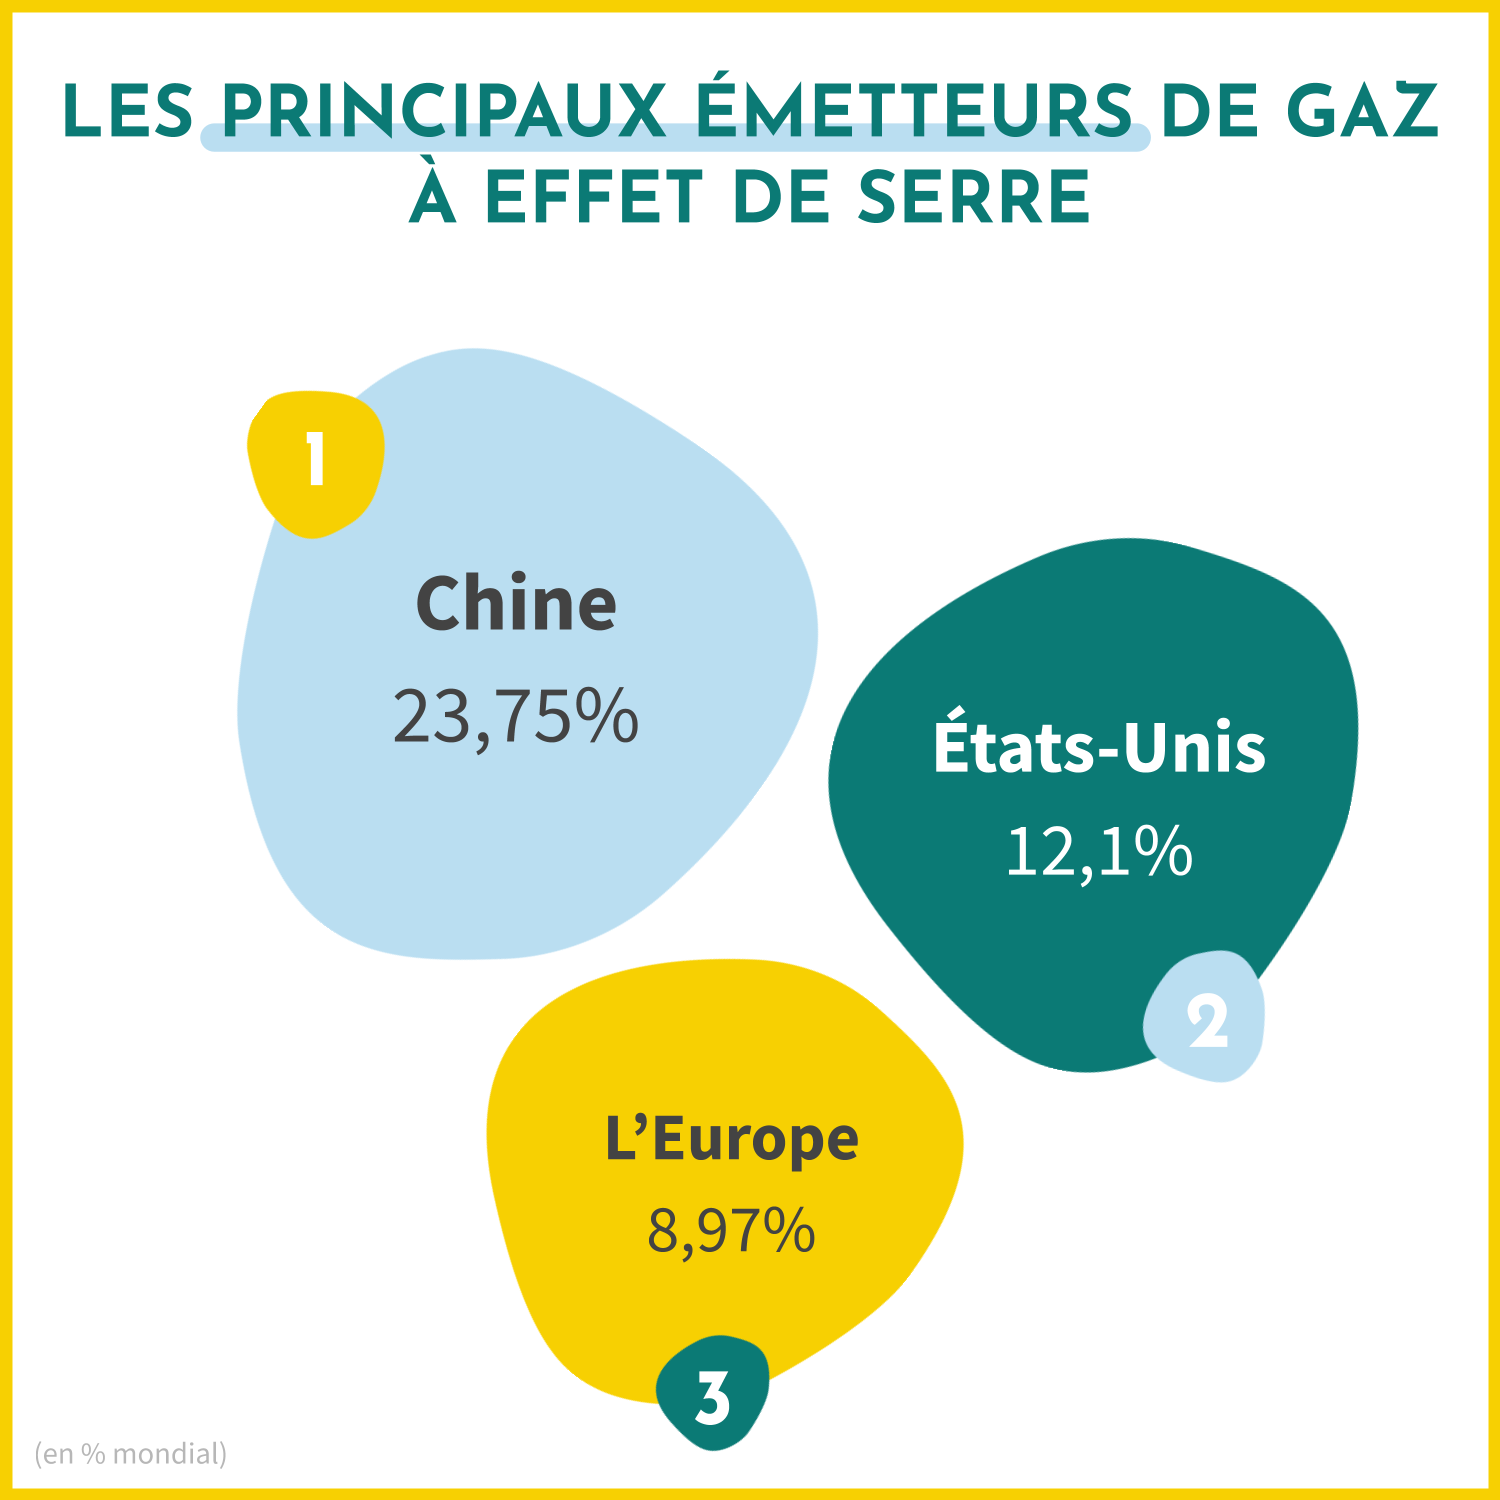 Les principaux émetteurs de gaz à effet de serre dans le monde sont la Chine (23,75% des émissions des GES), les Etats-Unis (12,1% des émissions des GES) et l'Europe (